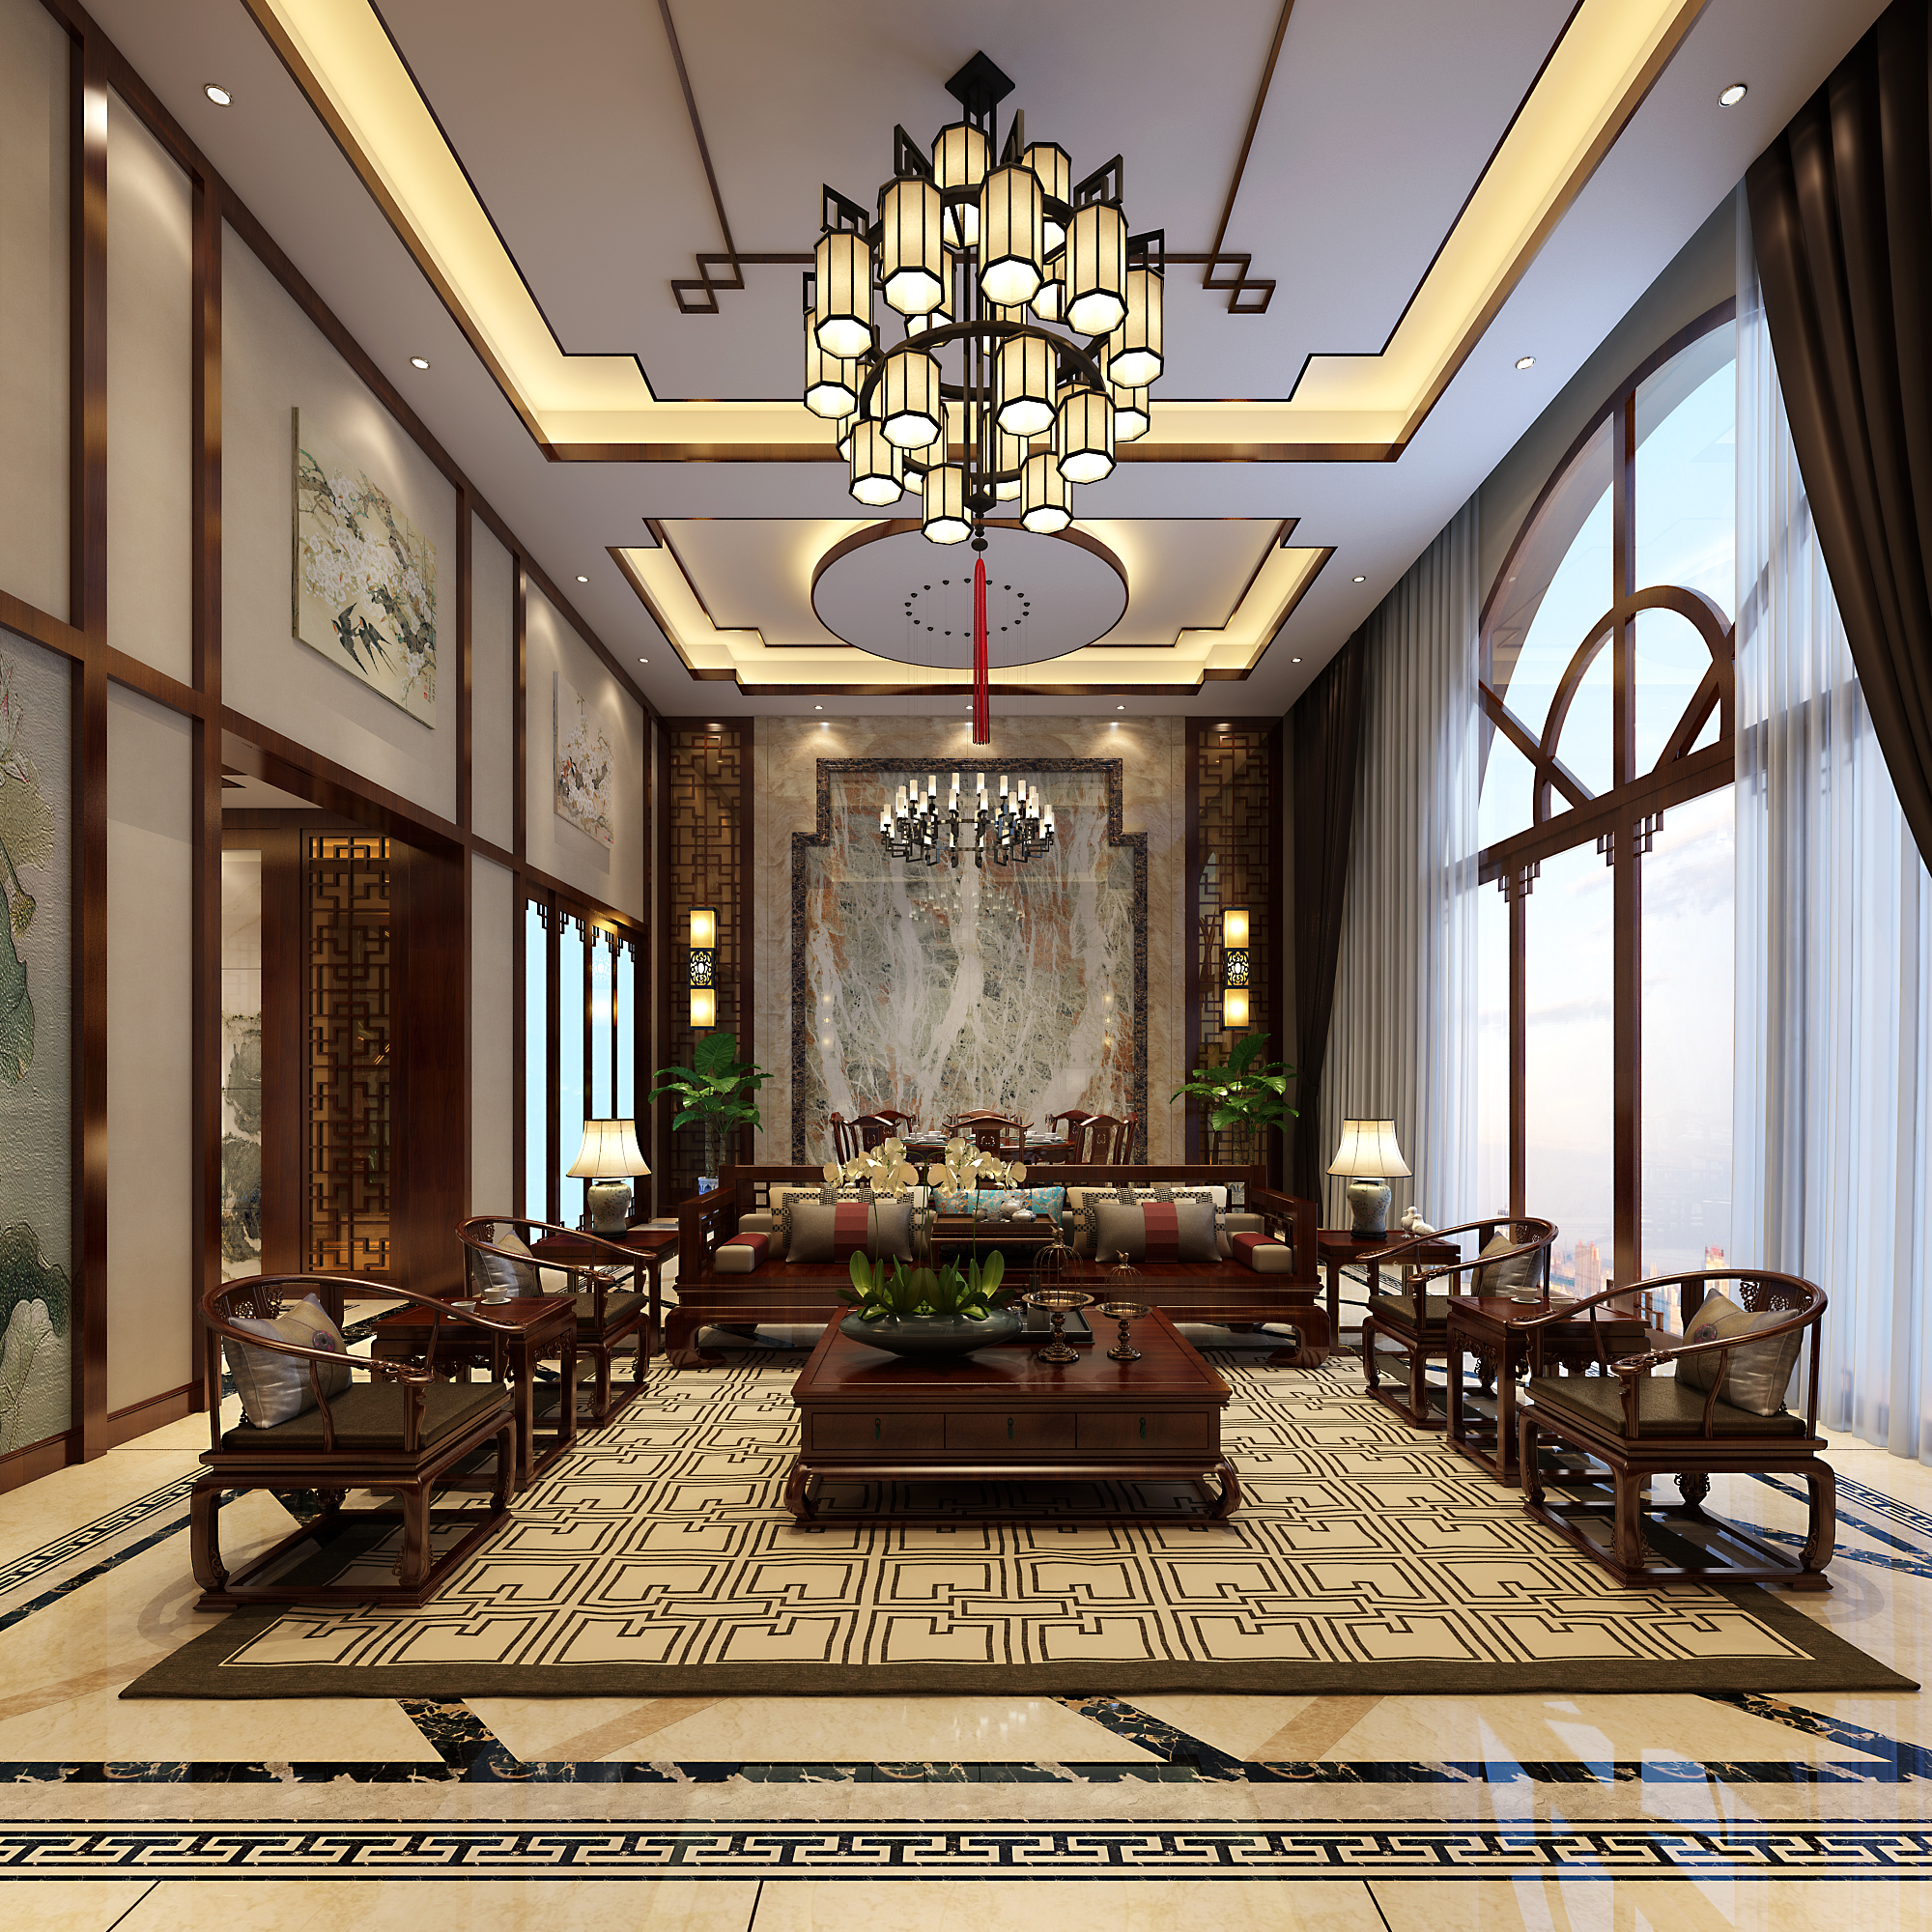 南宁丽景花园480㎡客厅新中式装修风格案例效果图